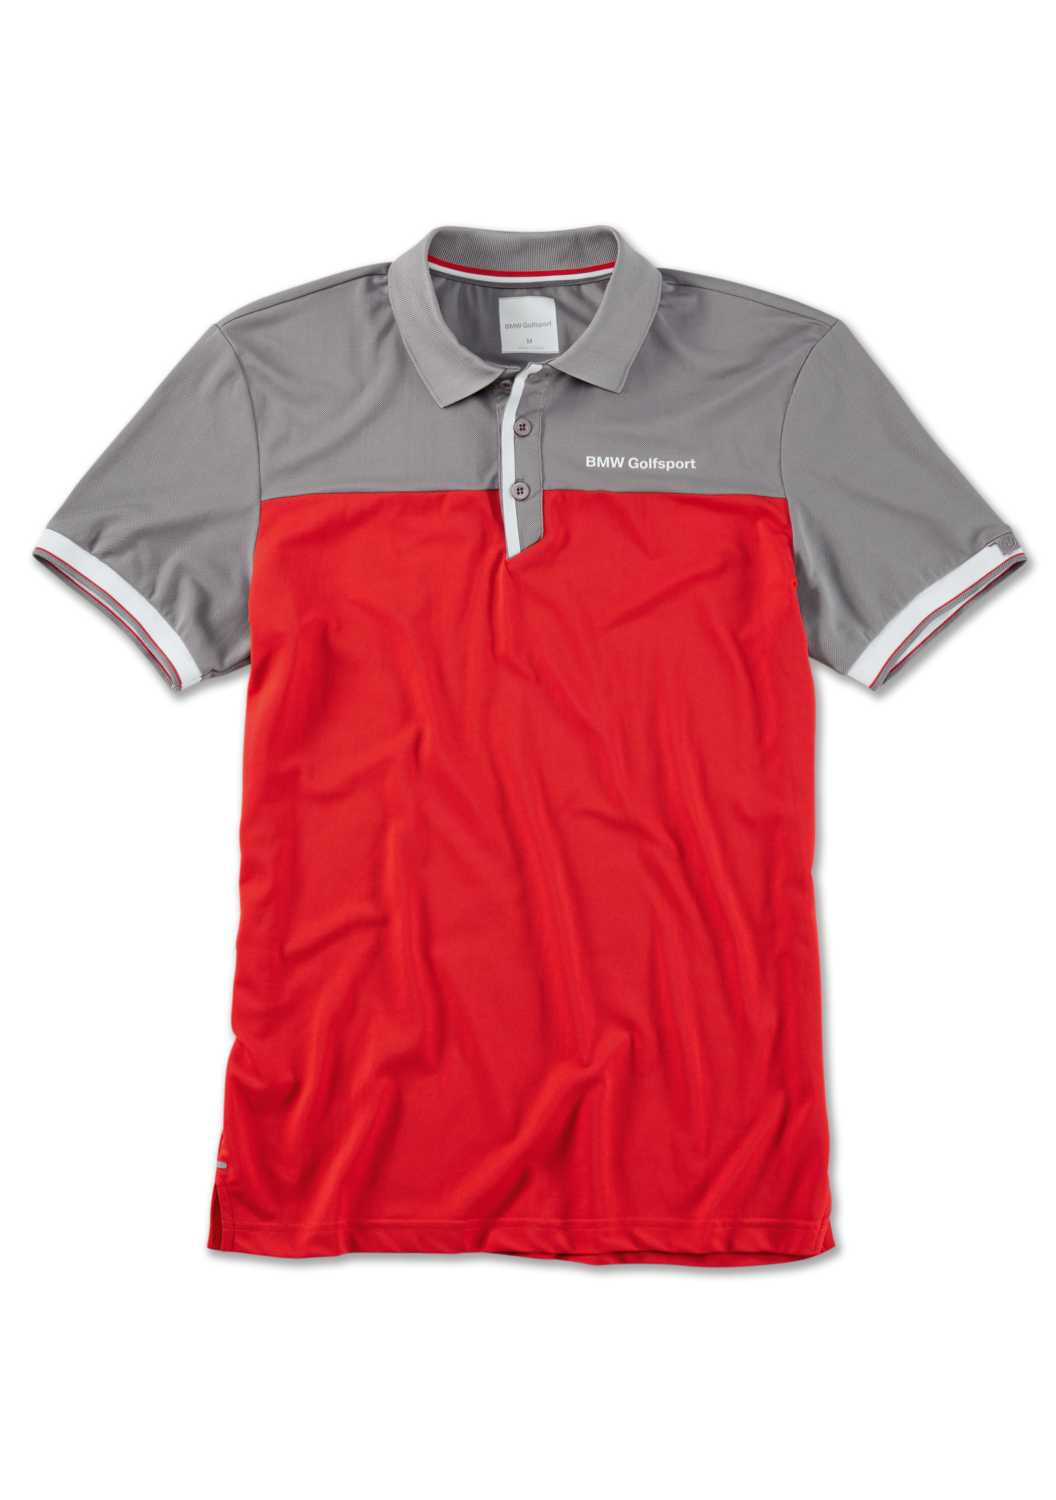 BMW Golfsport Collection Golfsport Poloshirt Men Red (04/2019).